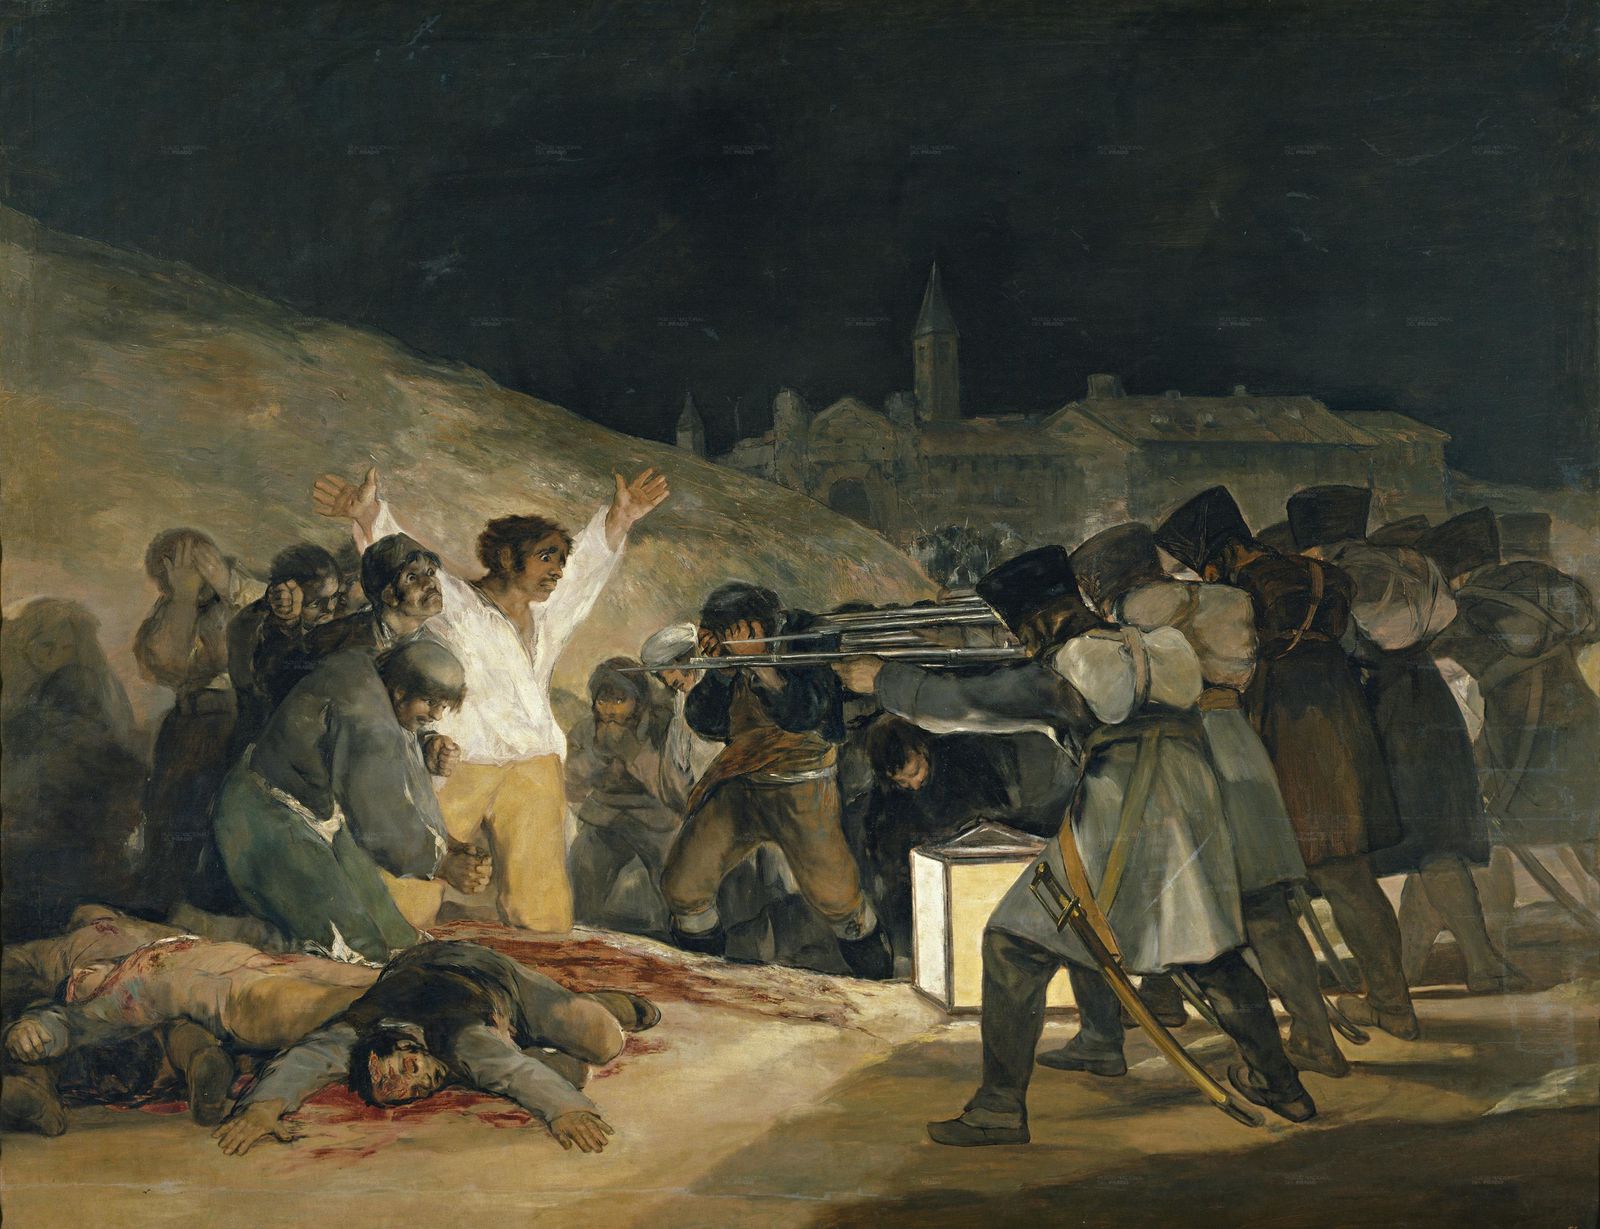 Nom de l’artiste : Francisco de Goya   Titre de l’oeuvre : Tres de mayo   Date : 1814   Technique : Peinture sur toile   Dimension : 345x266cm   Lieu de conservation : Musée du Prado, Madrid